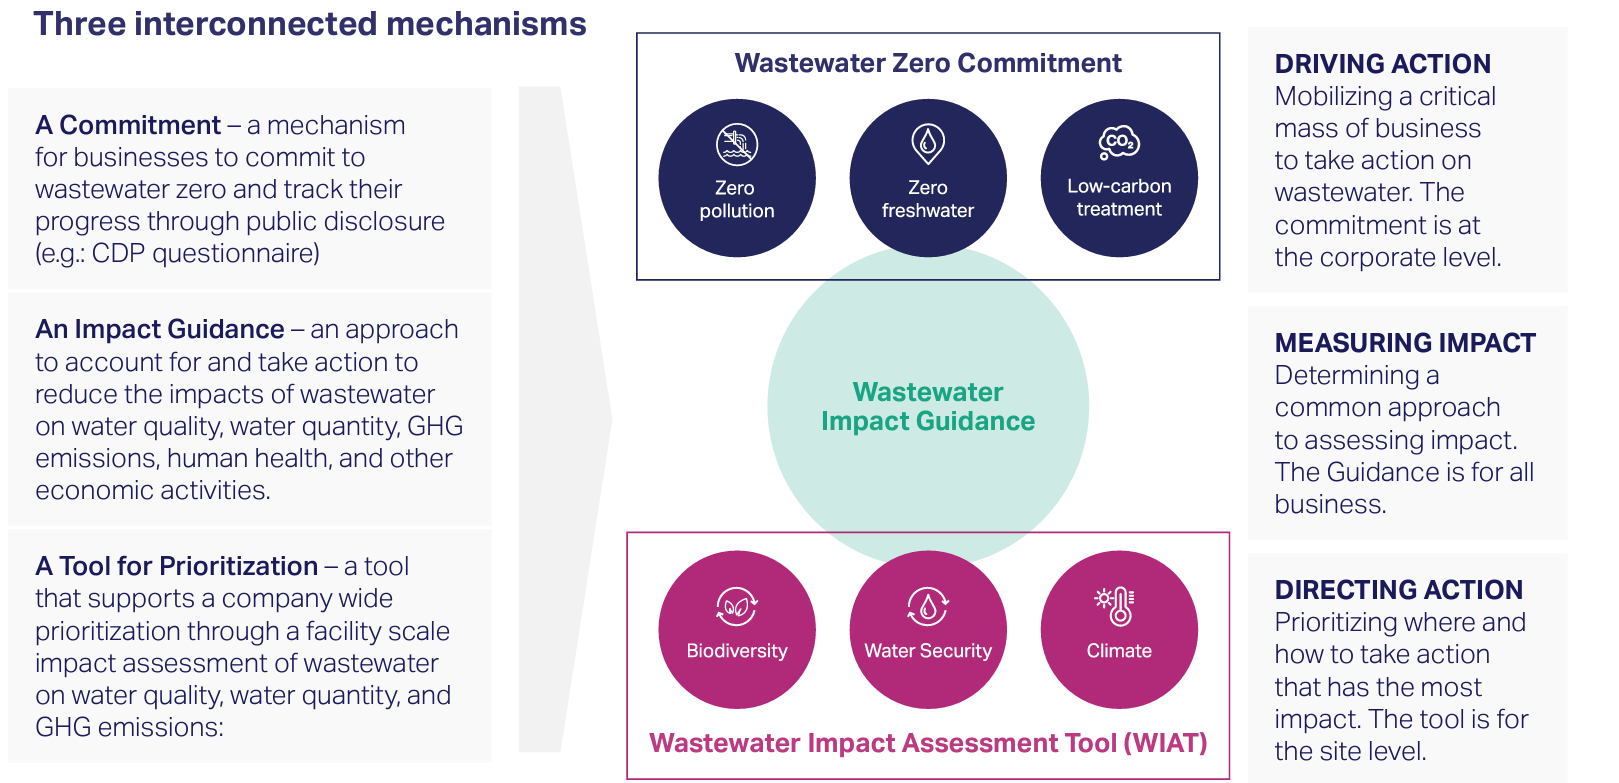 WBCSD-The Wastewater Zero initiative framework